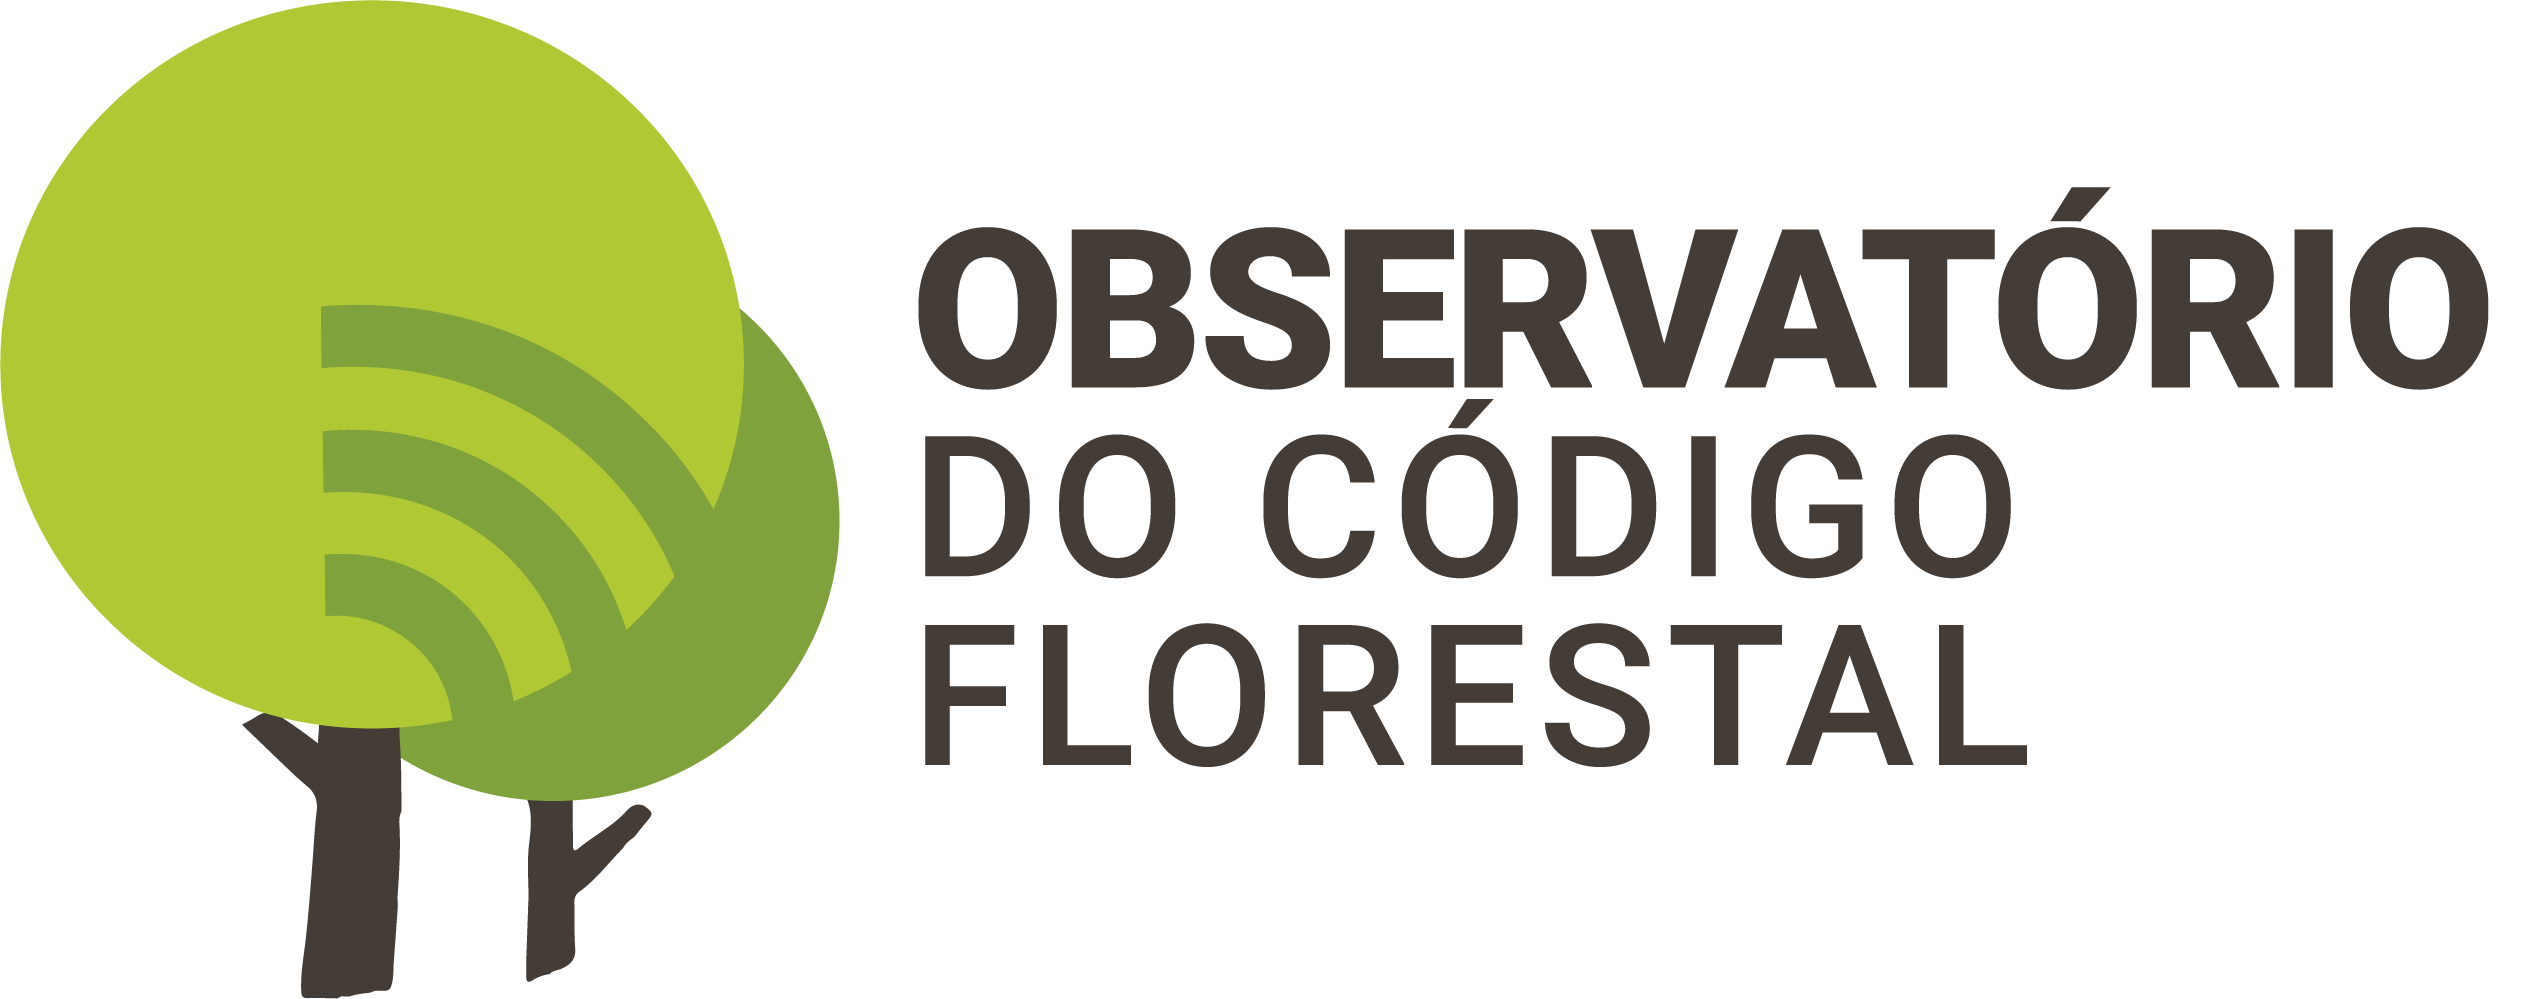 Obeservatório do Código Florestal